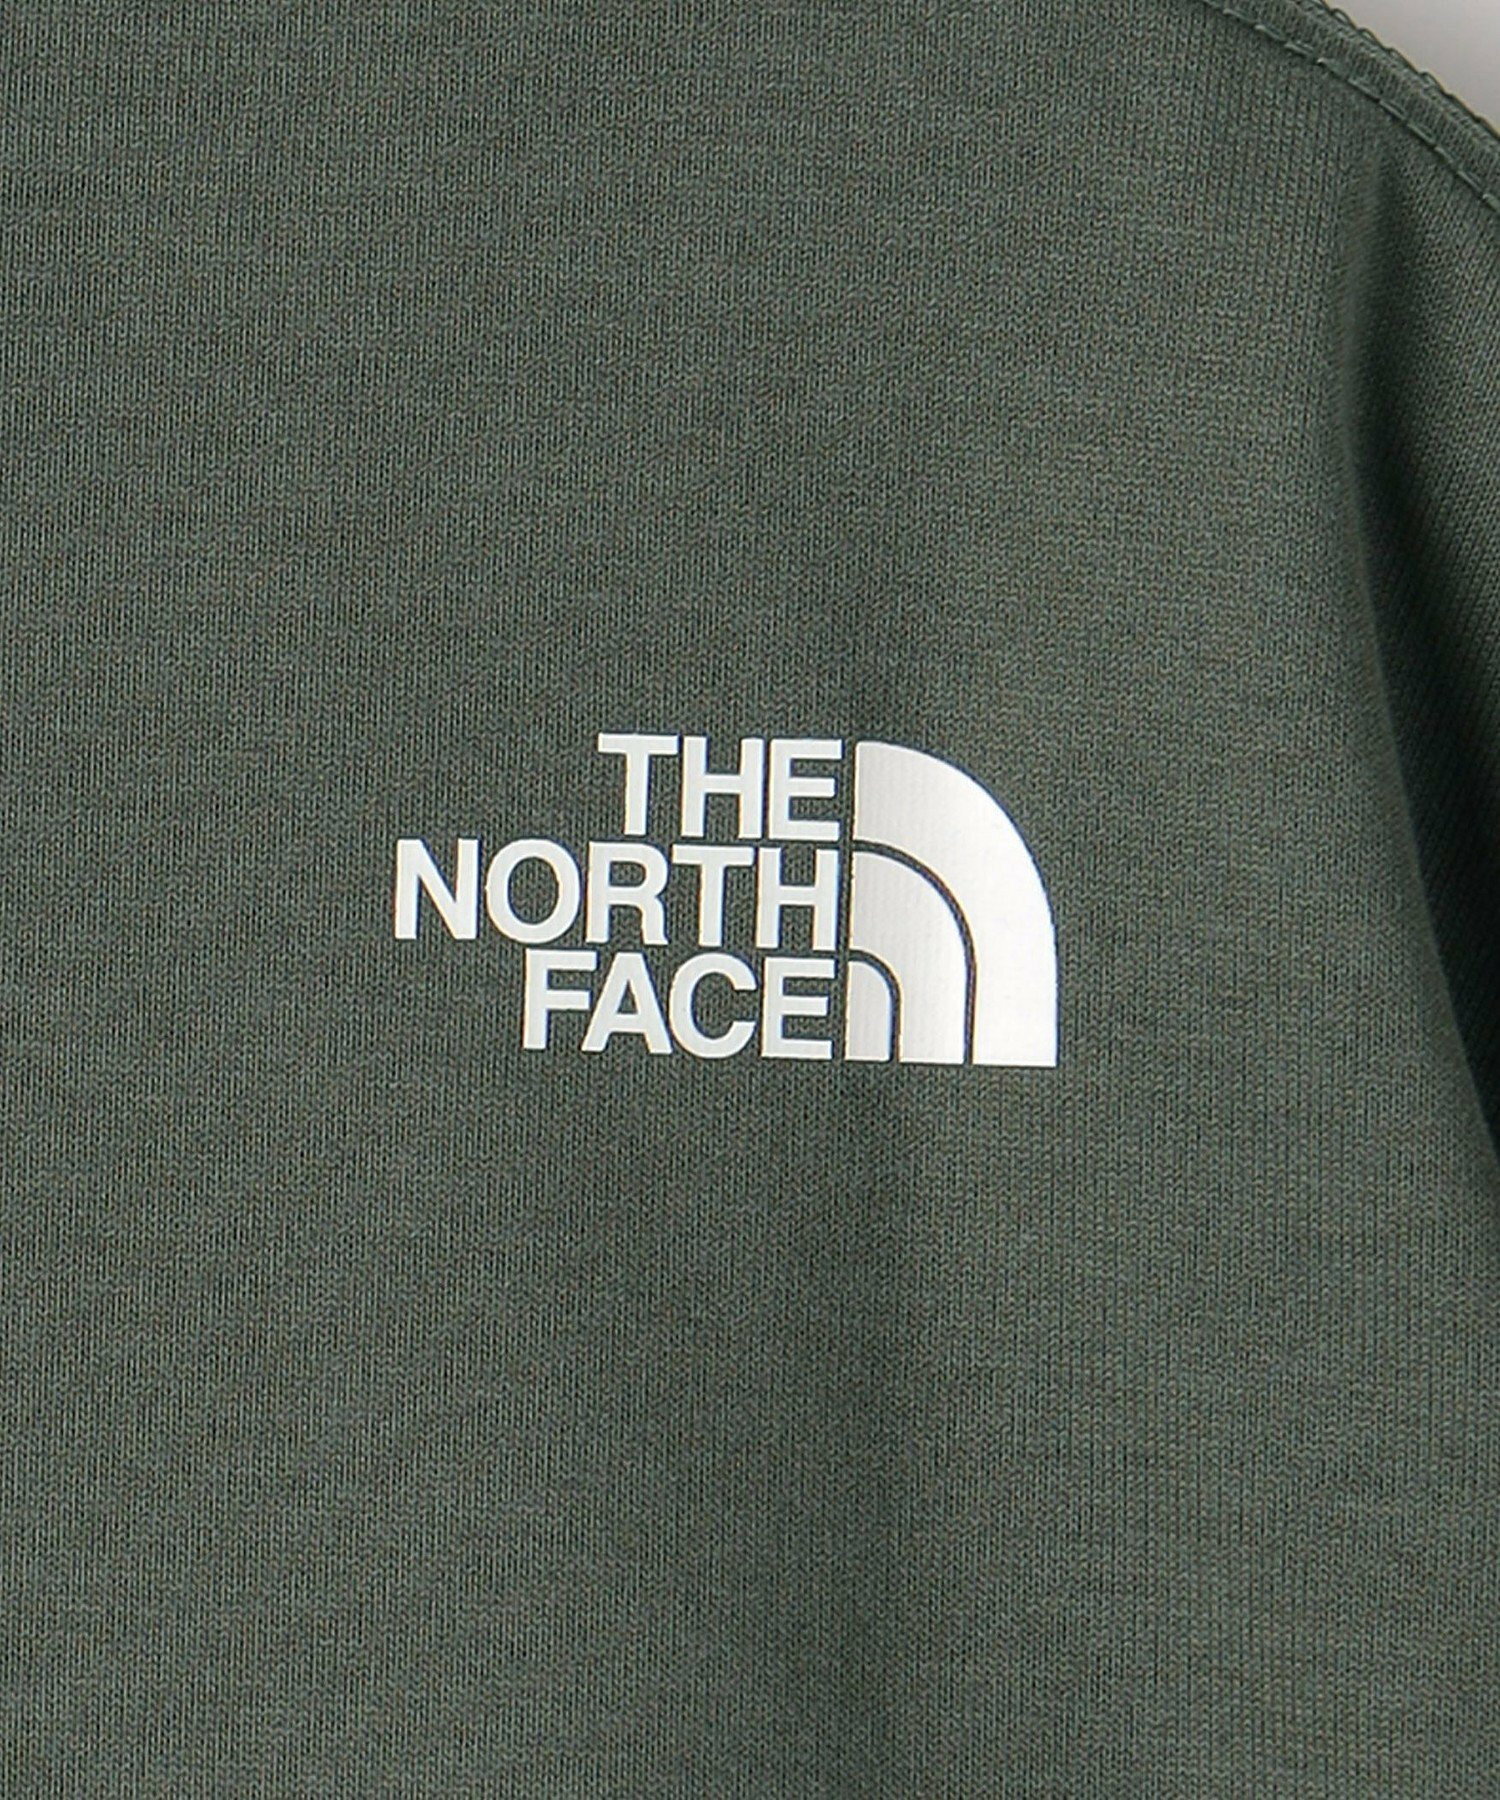 <THE NORTH FACE>ヌプシ ショートスリーブ Tシャツ